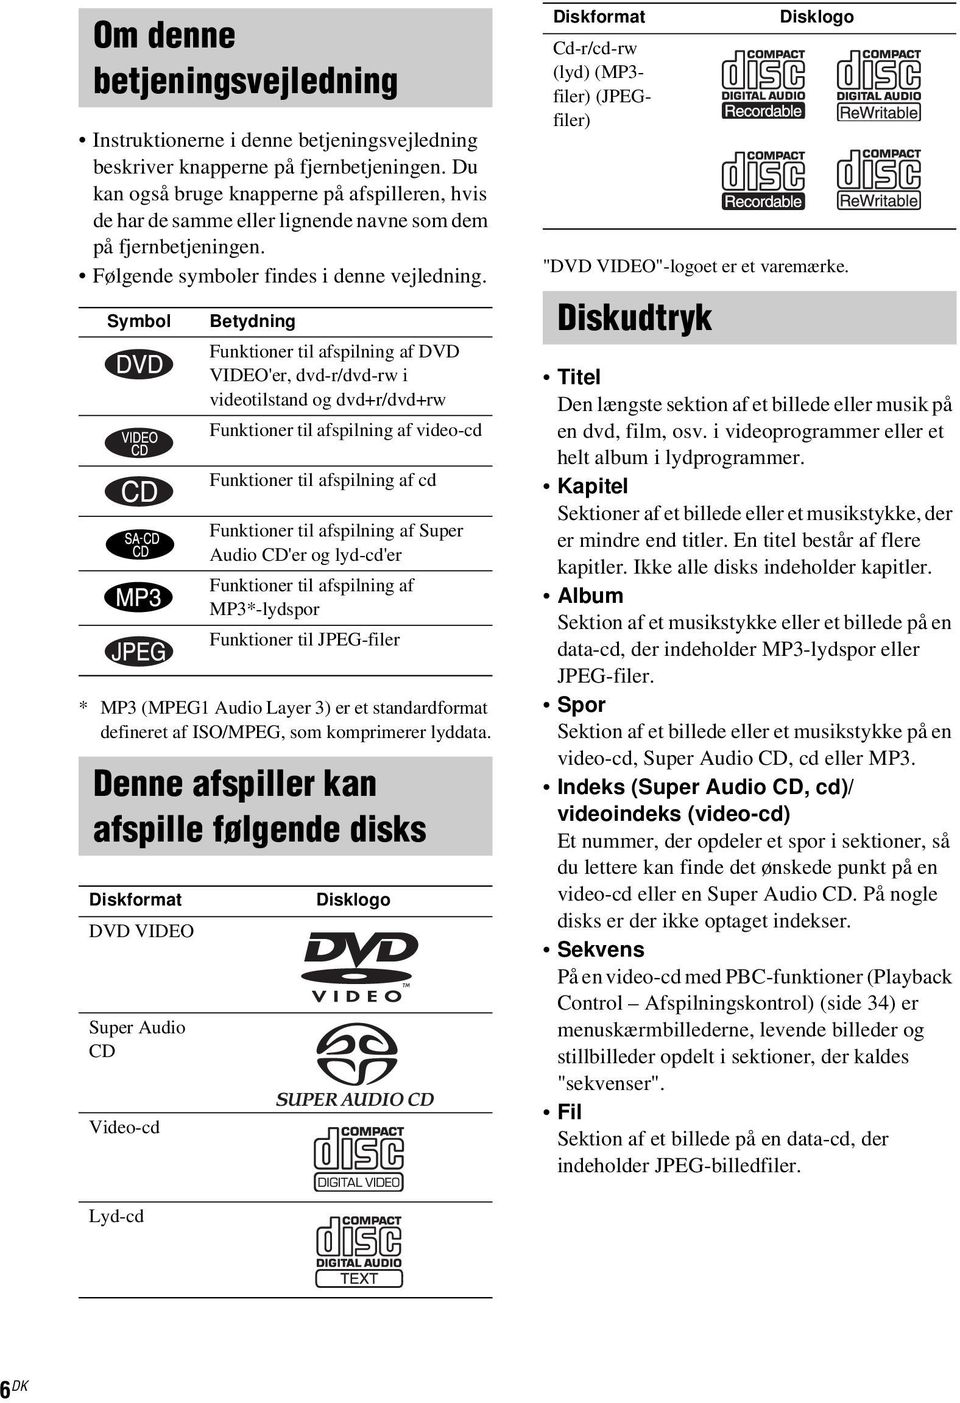 Symbol Betydning Funktioner til afspilning af DVD VIDEO'er, dvd-r/dvd-rw i videotilstand og dvd+r/dvd+rw Funktioner til afspilning af video-cd Funktioner til afspilning af cd Funktioner til